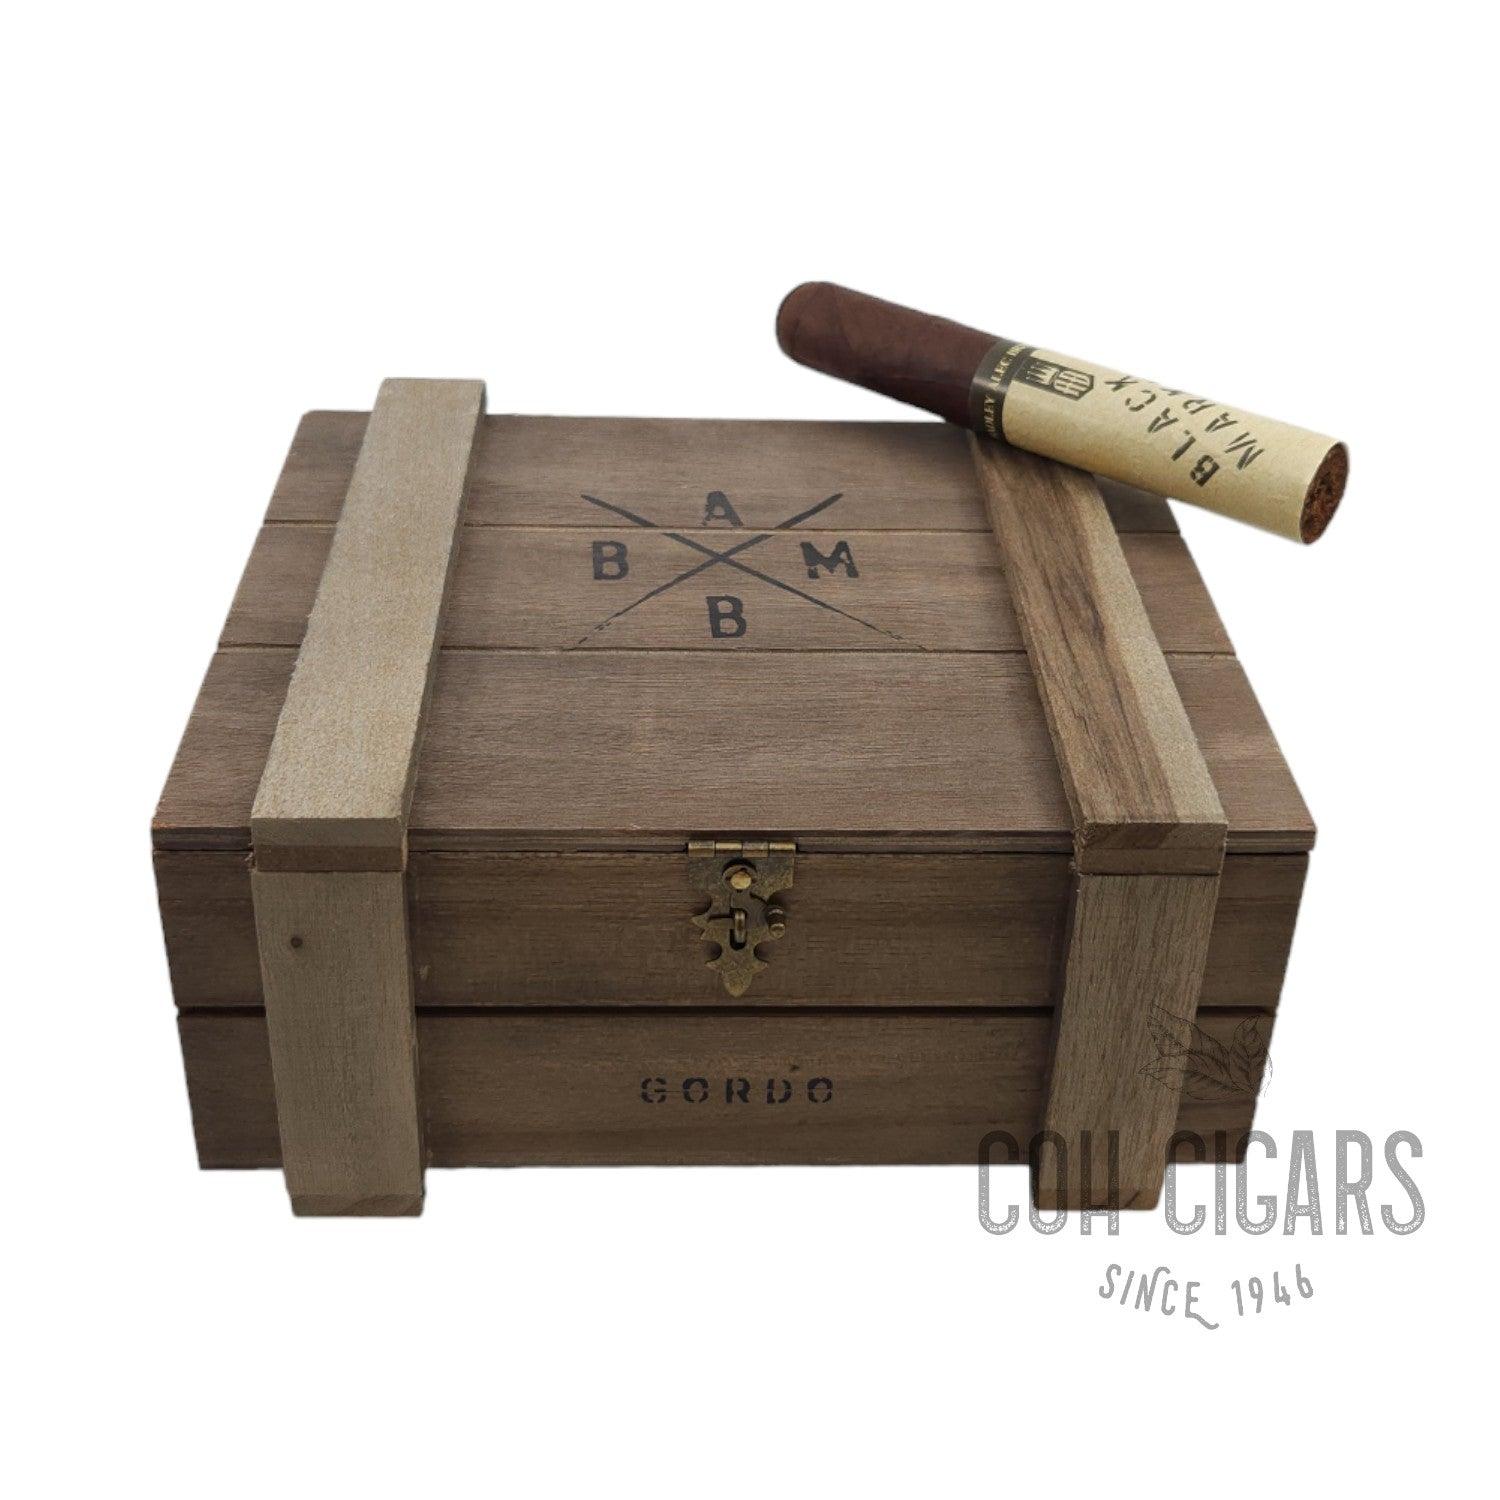 Alec Bradley Cigar | Black Market Gordo | Box 22 - hk.cohcigars